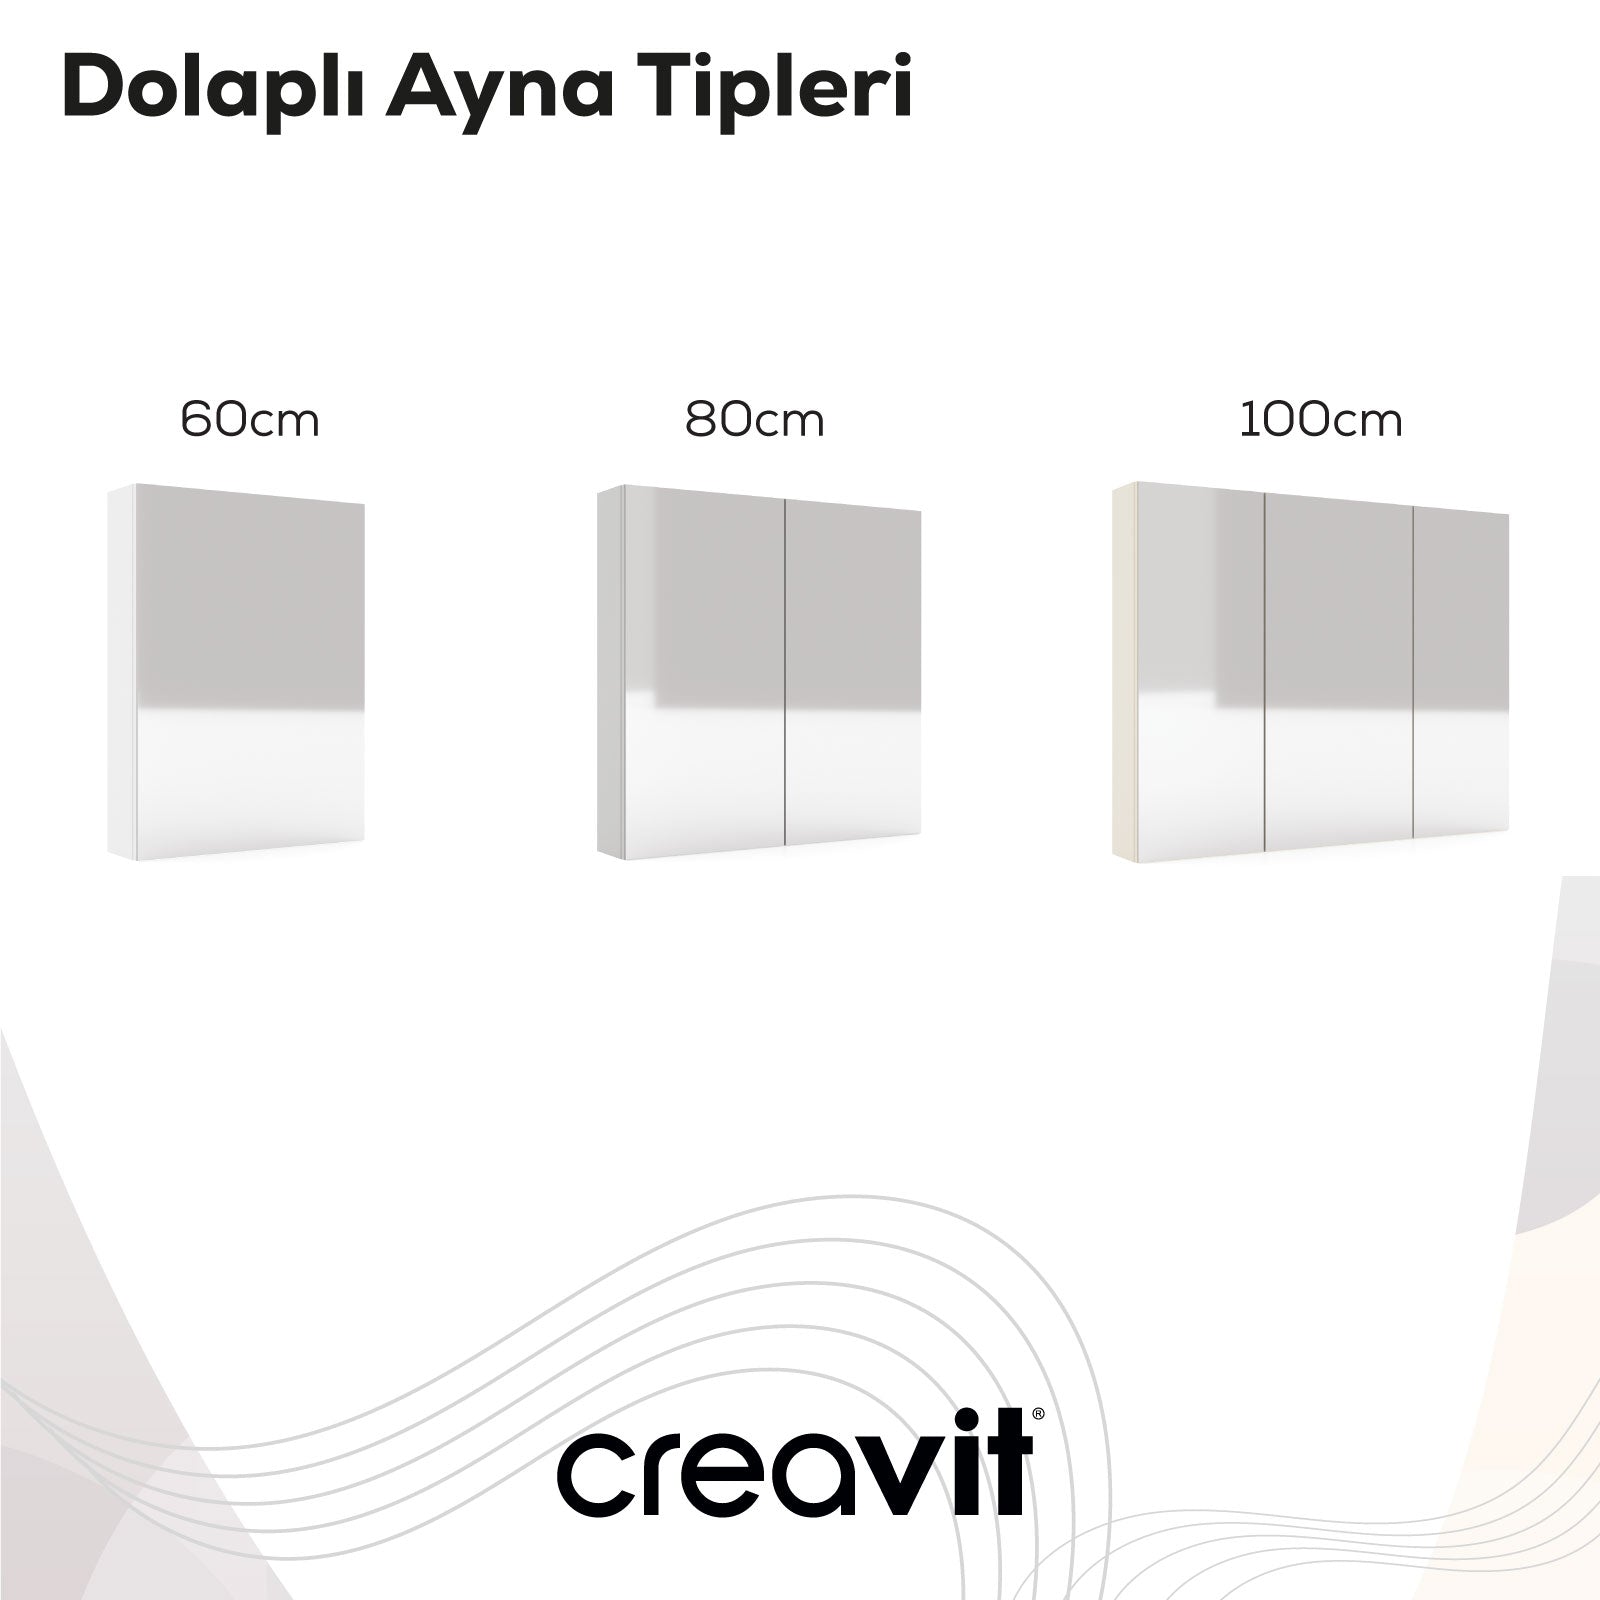 D10 100 cm Melamin Aynalı Dolap Dafne - Creavit | Banyo Bu Tarafta